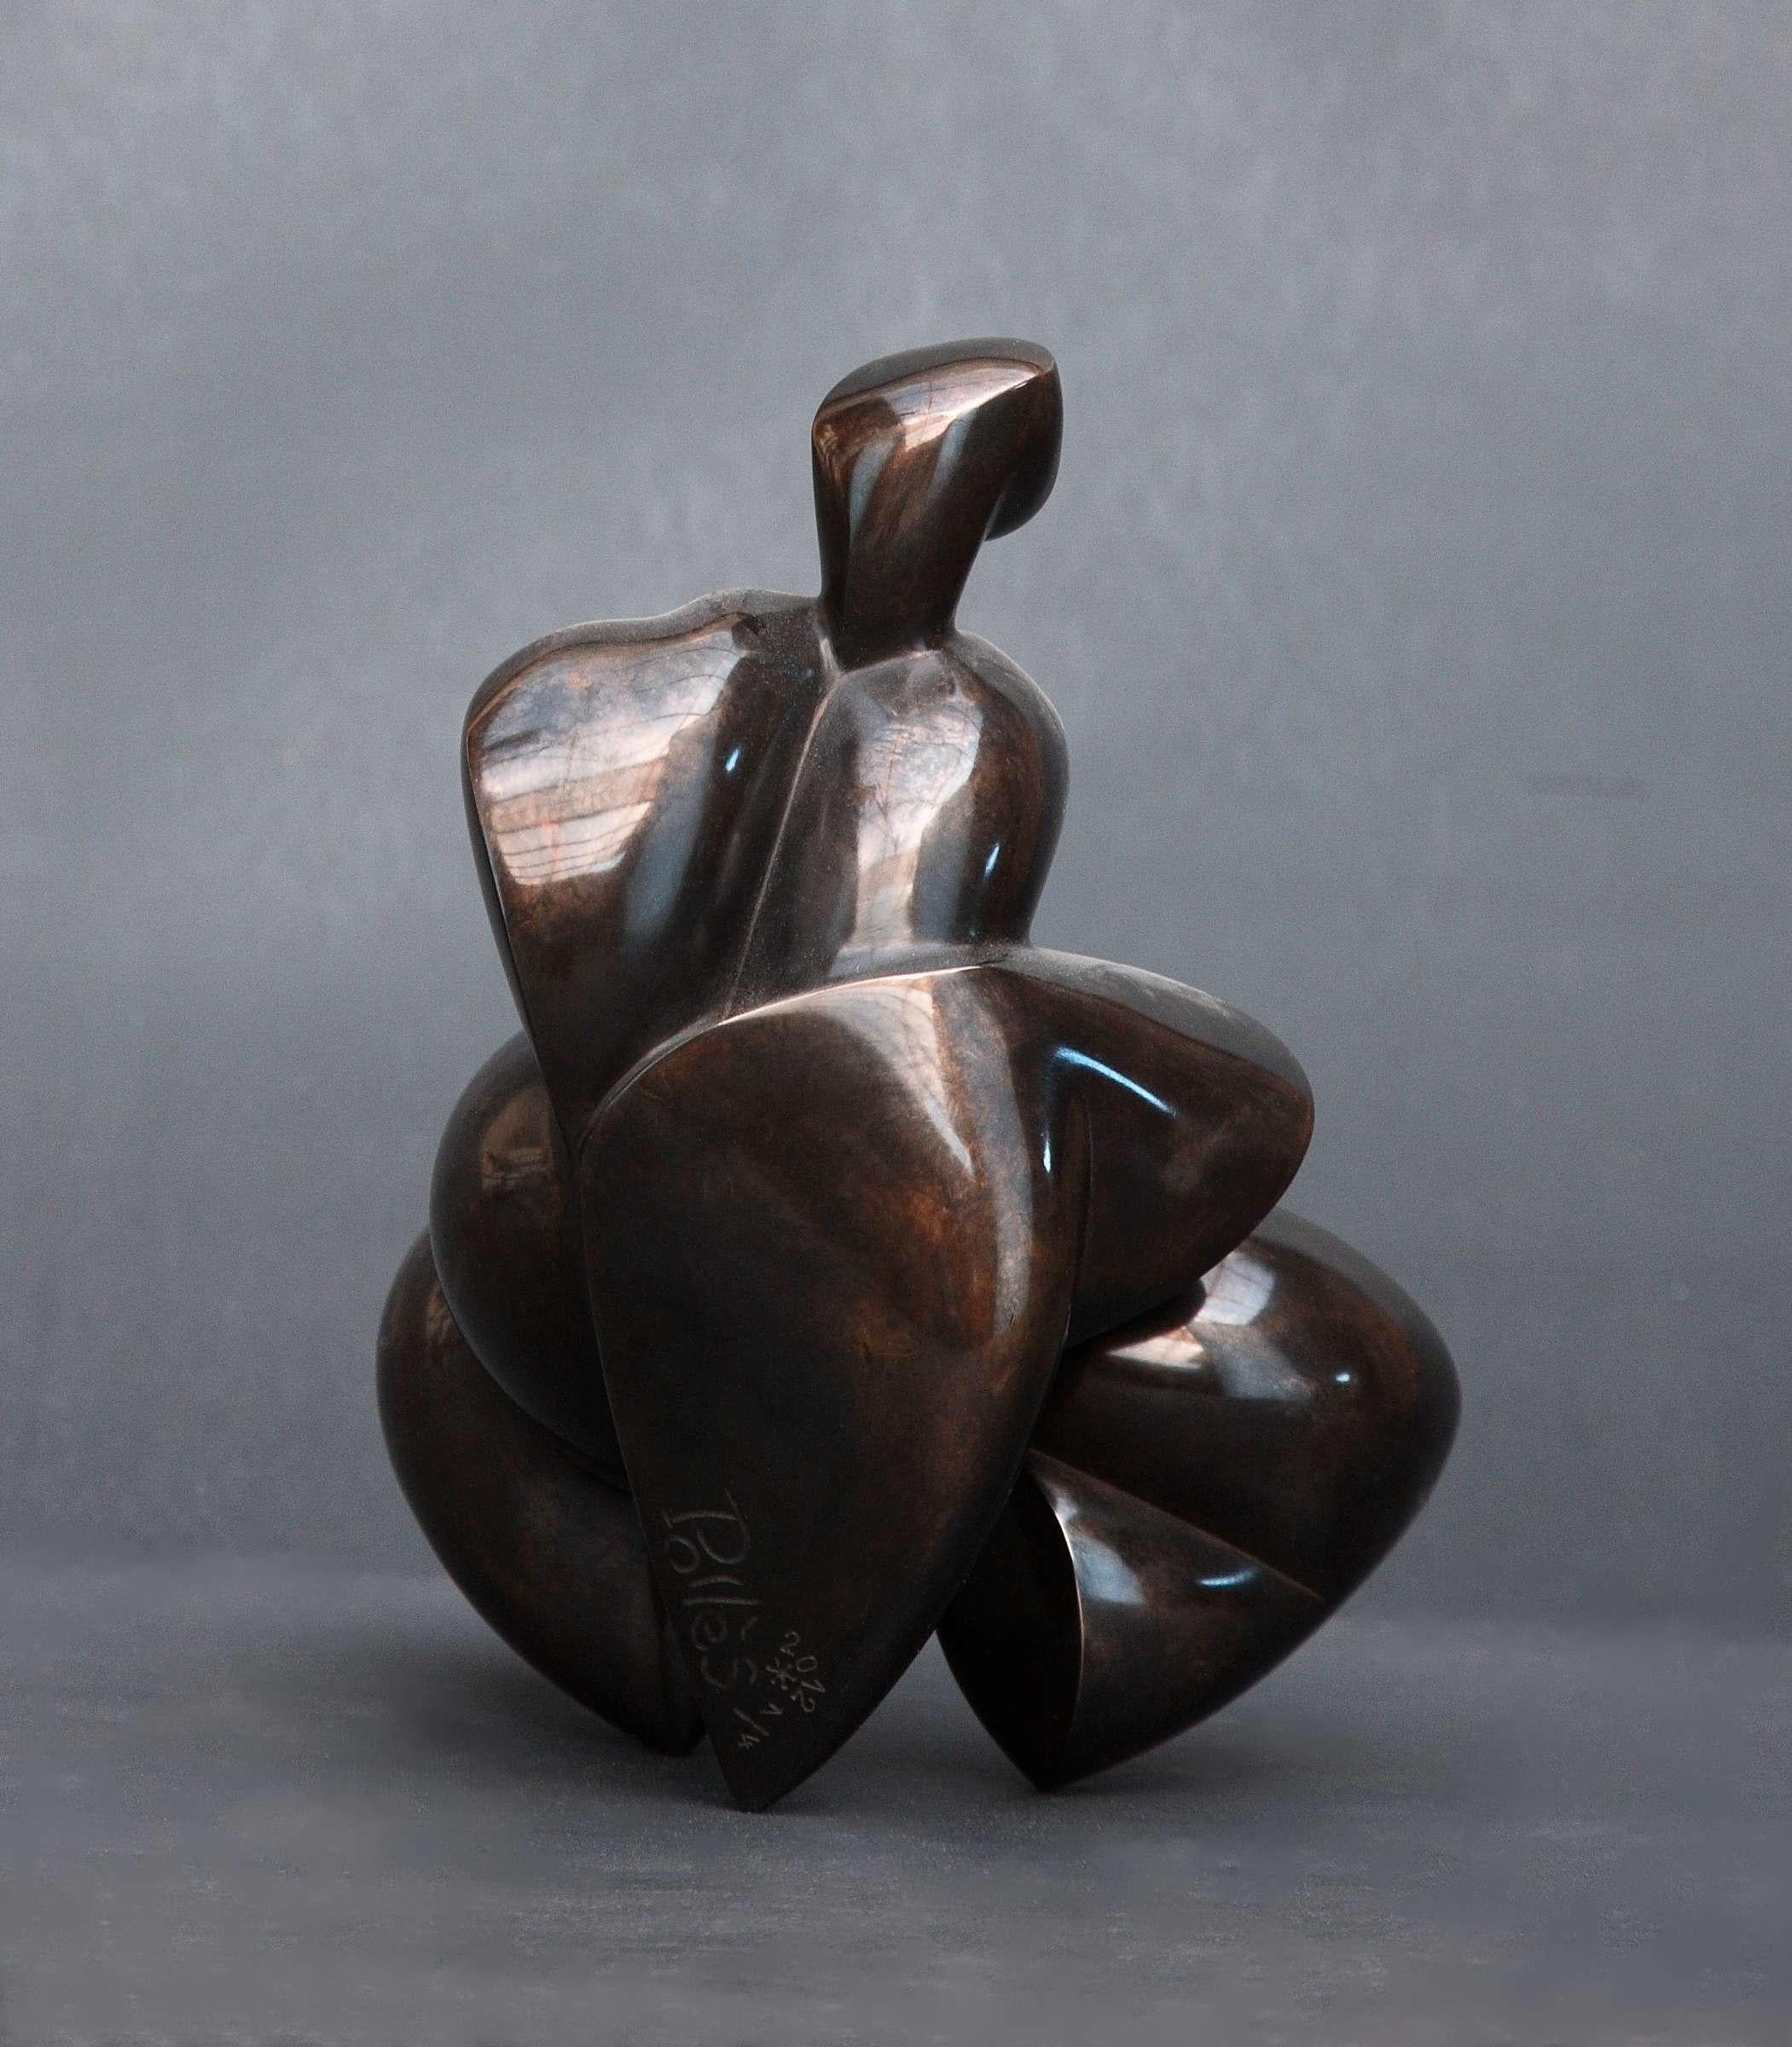 Pollès - Bronze-Skulptur - Oxynamid
Bronze
Auflage: 1/4
2011
21 x 13 x 17 cm
Signiert und nummeriert

BIOGRAPHIE
Pollès wurde 1945 in Paris geboren
Wie Leonard de Vinci auf der Suche nach anatomischer Perfektion, nach der Darstellung von Bewegungen,